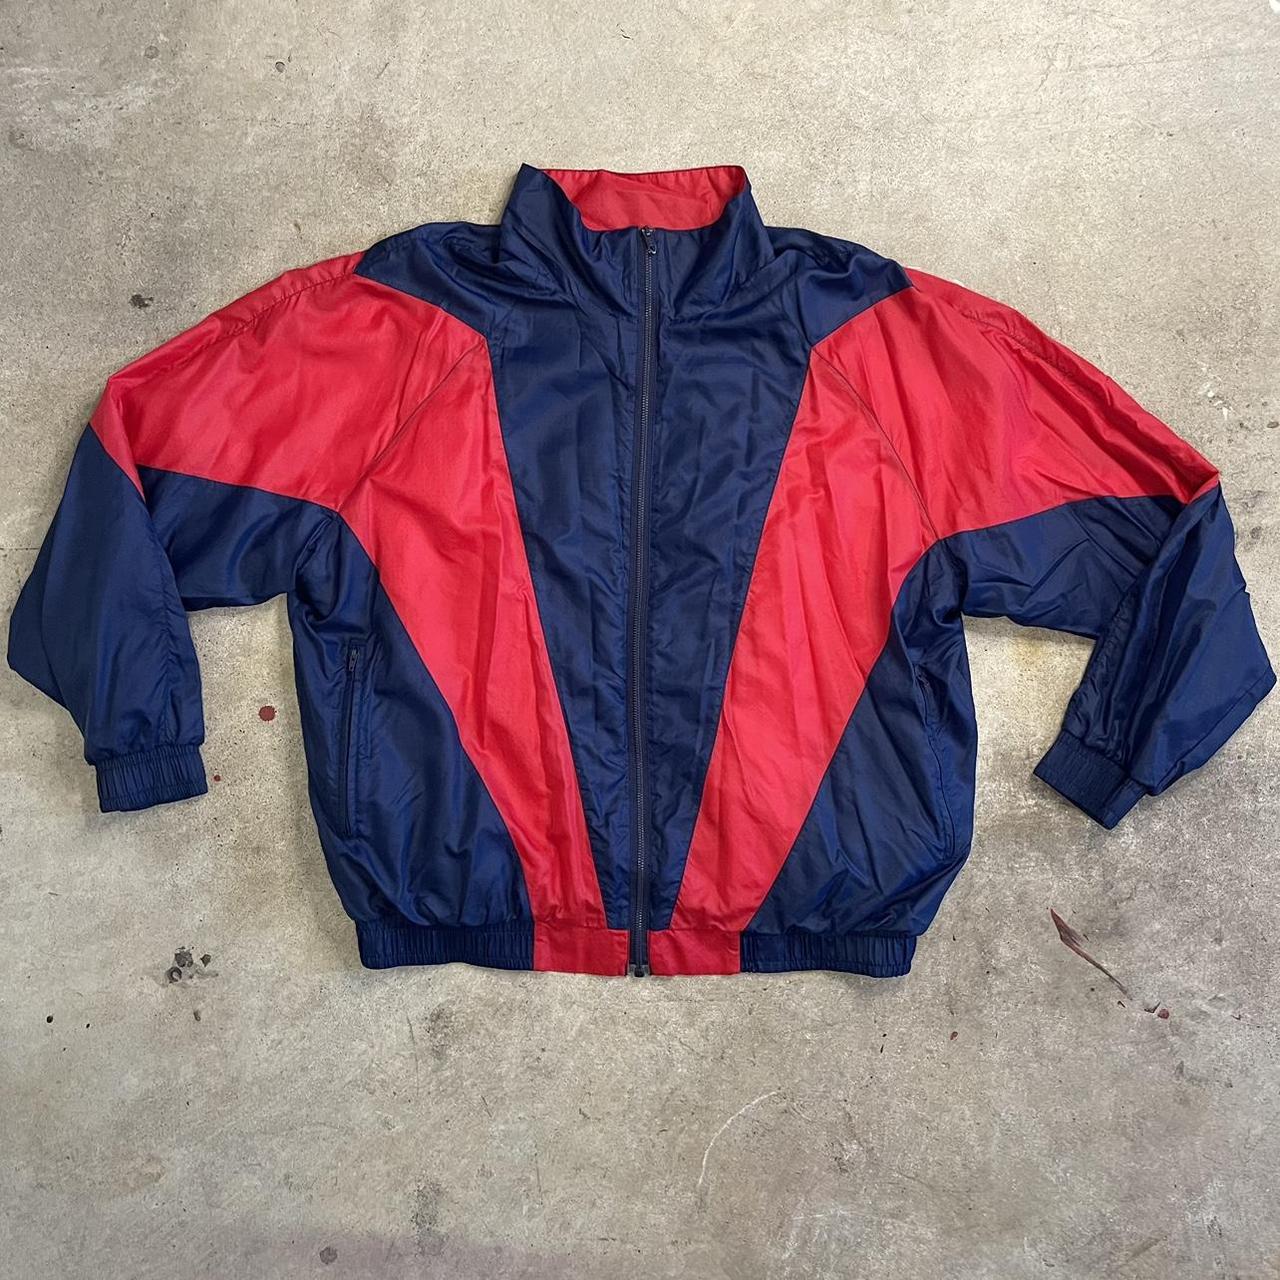 Vintage 90s Jantzen windbreaker jacket Awesome... - Depop